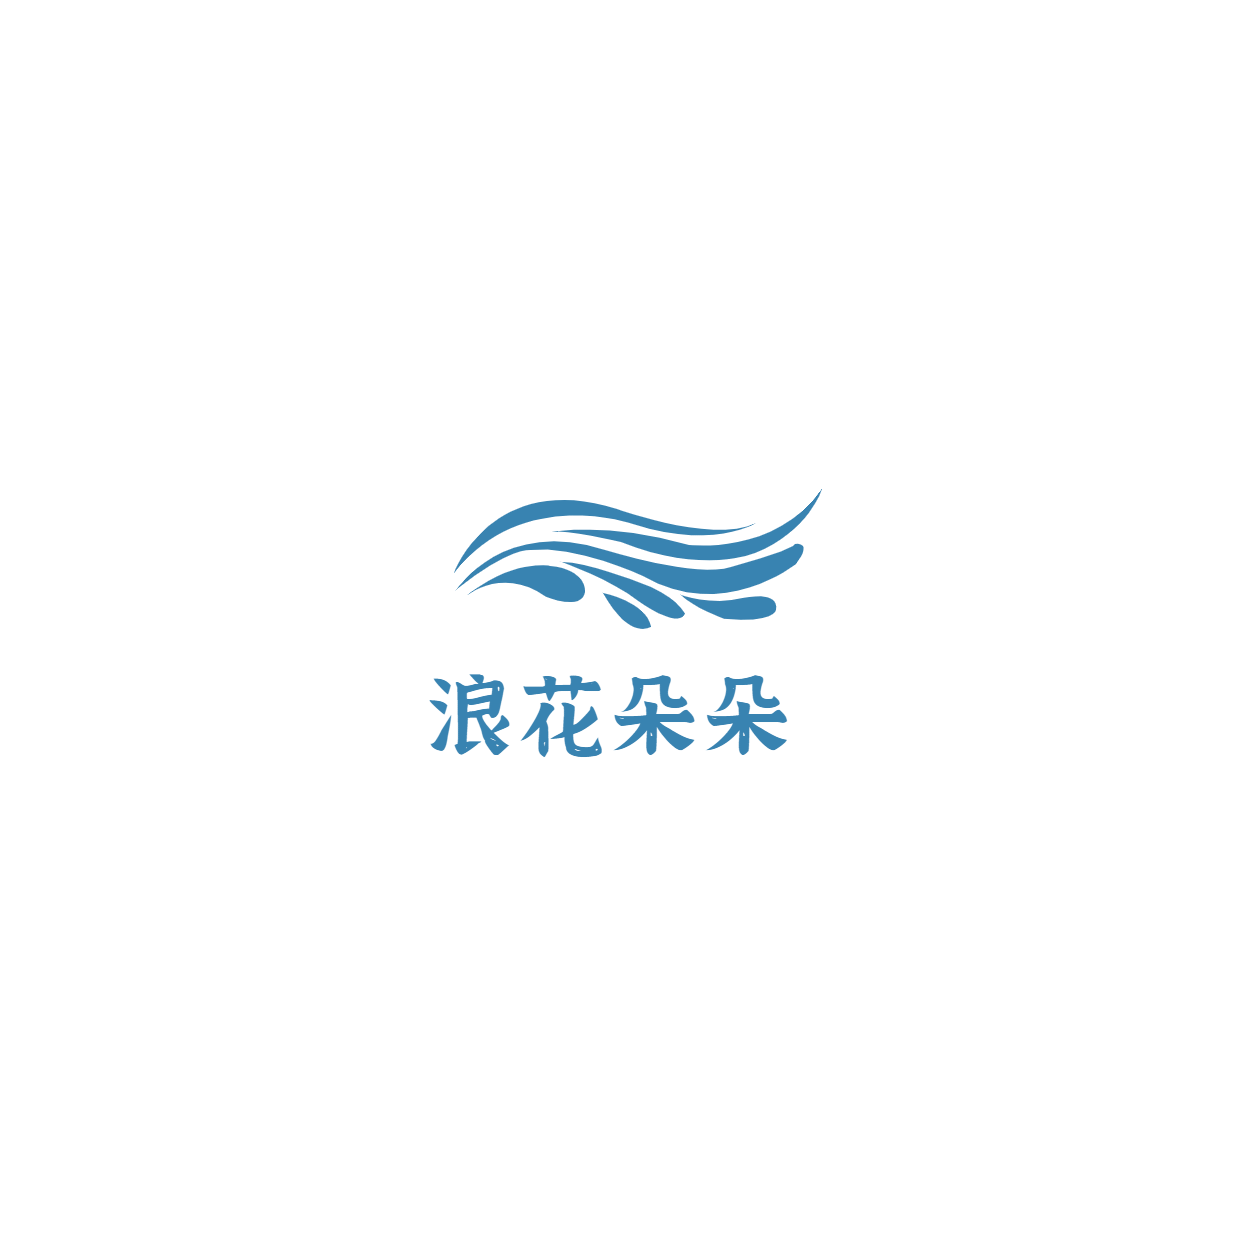 素质教育游泳培训头像logo预览效果